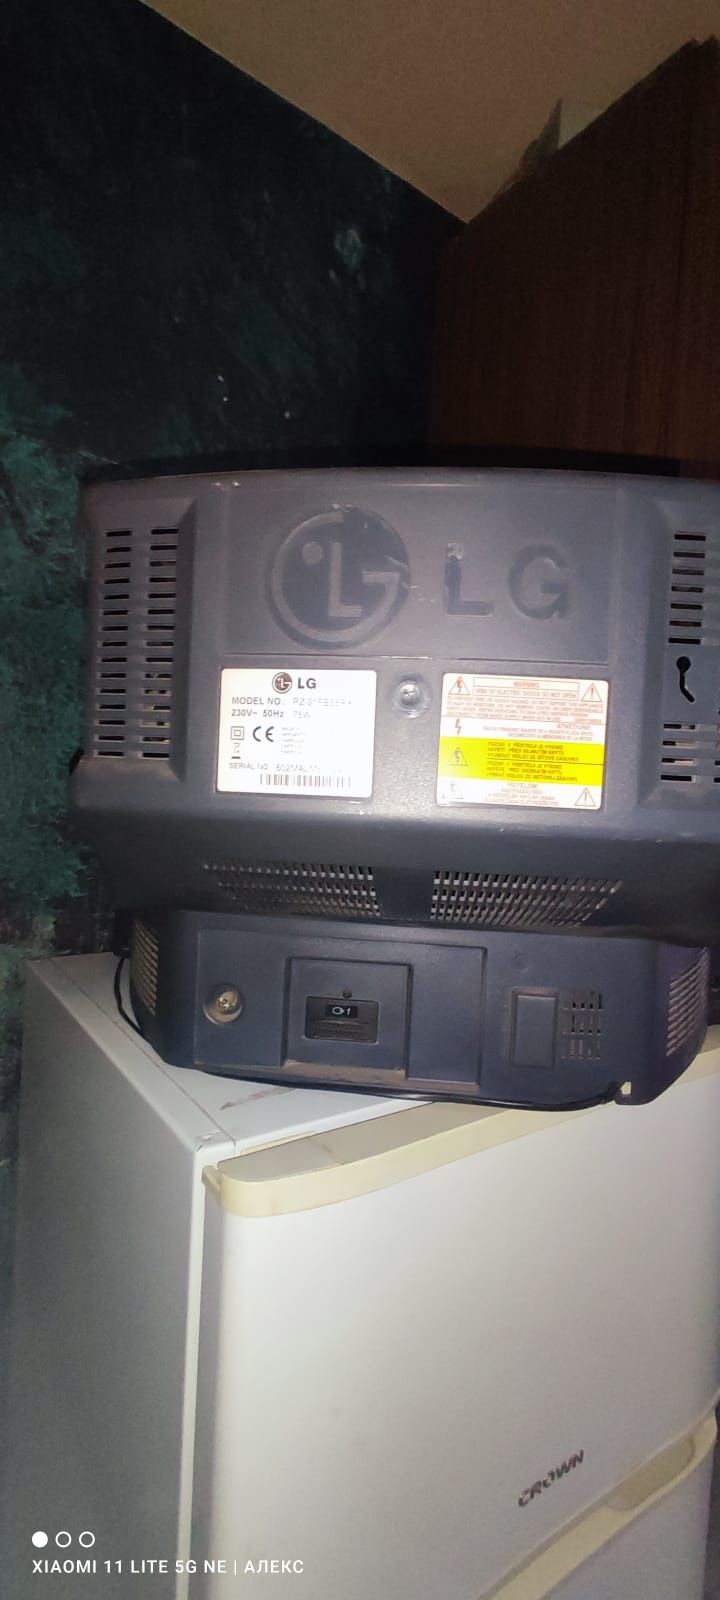 Телевизор LG 50лв